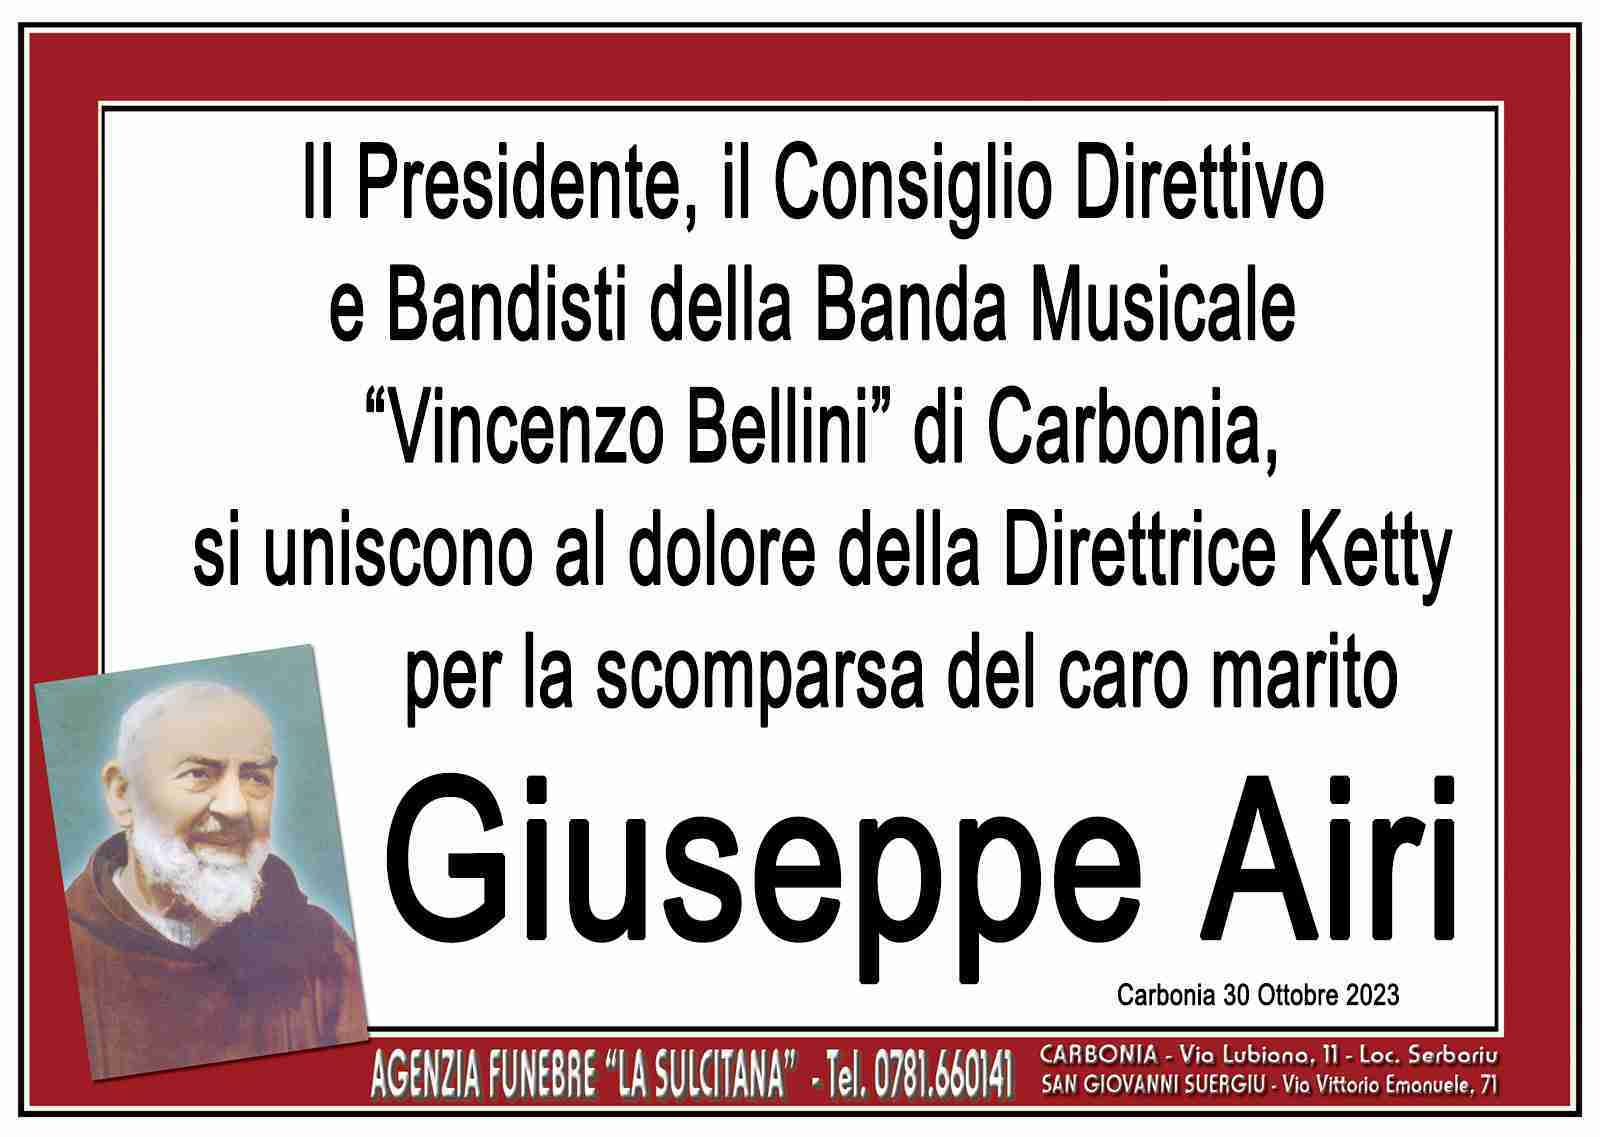 Giuseppe Airi